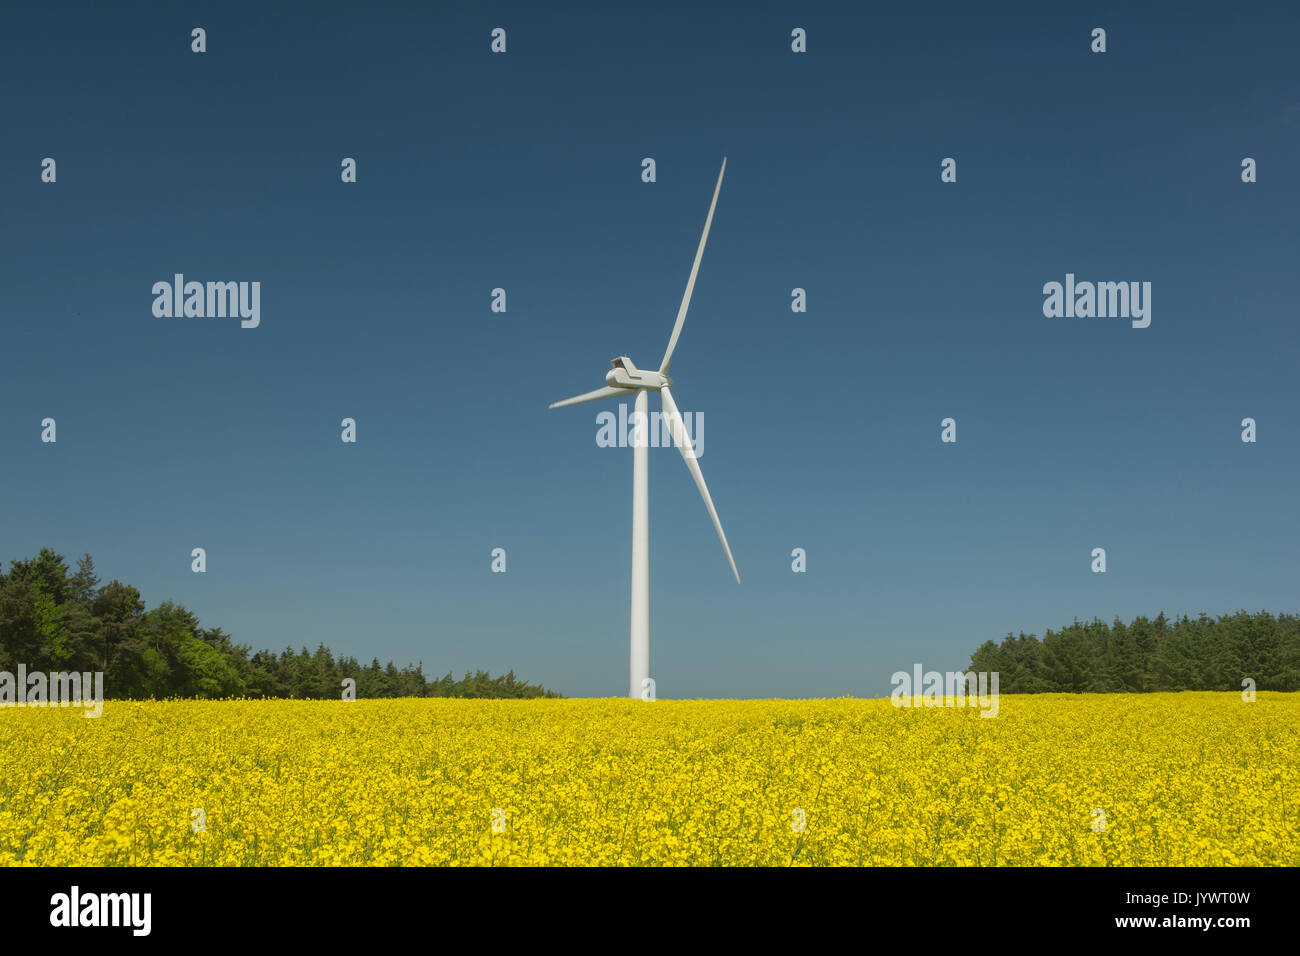 Wind turbine in field of oil seed rape with blue sky Stock Photo